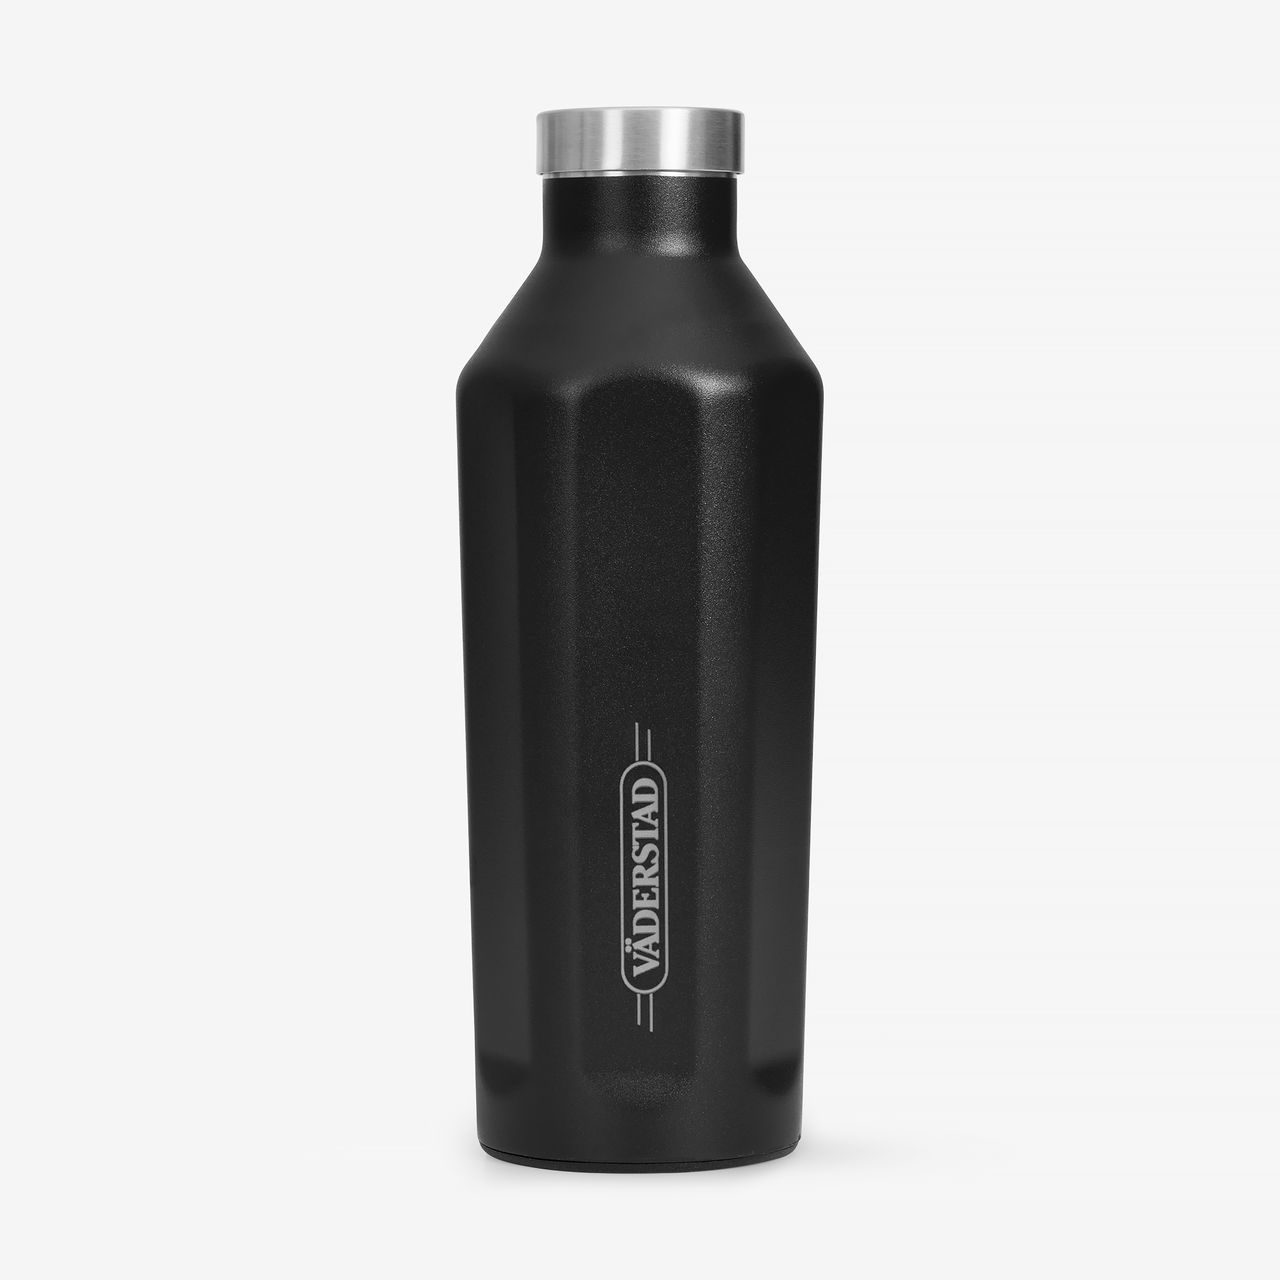 Water bottle in steel